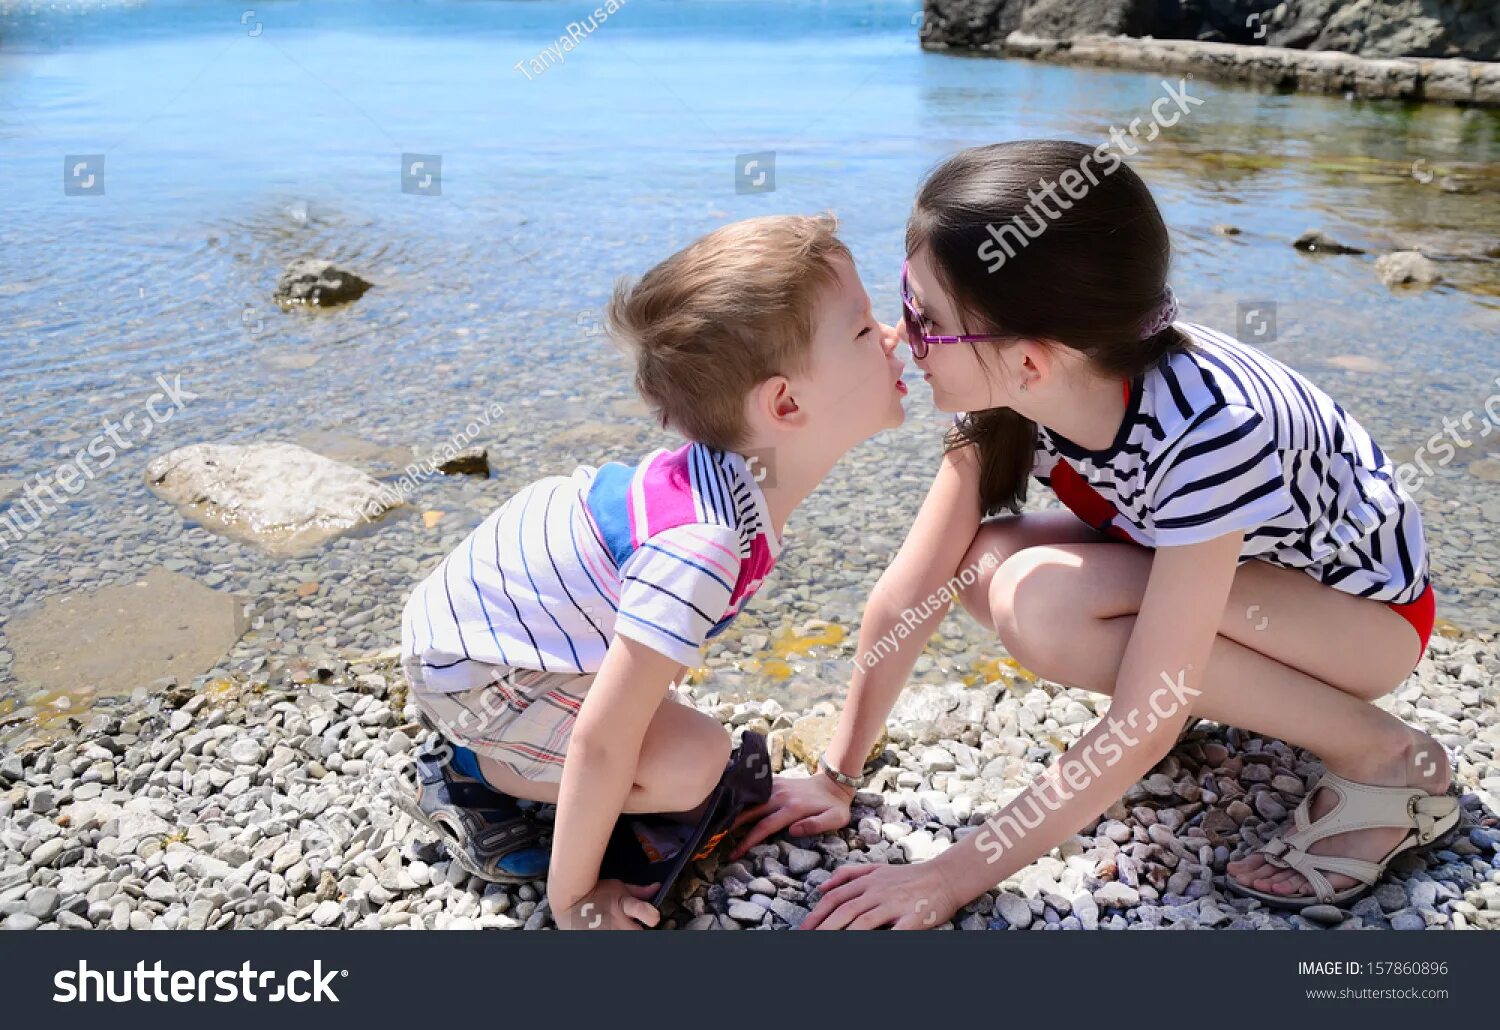 Сестра лижет подругам брата. Сестрички на пляжу лет 10. Маленький мальчик и девочка занимаются. Брат и сестра целуются. Поцелуй в 10 лет.